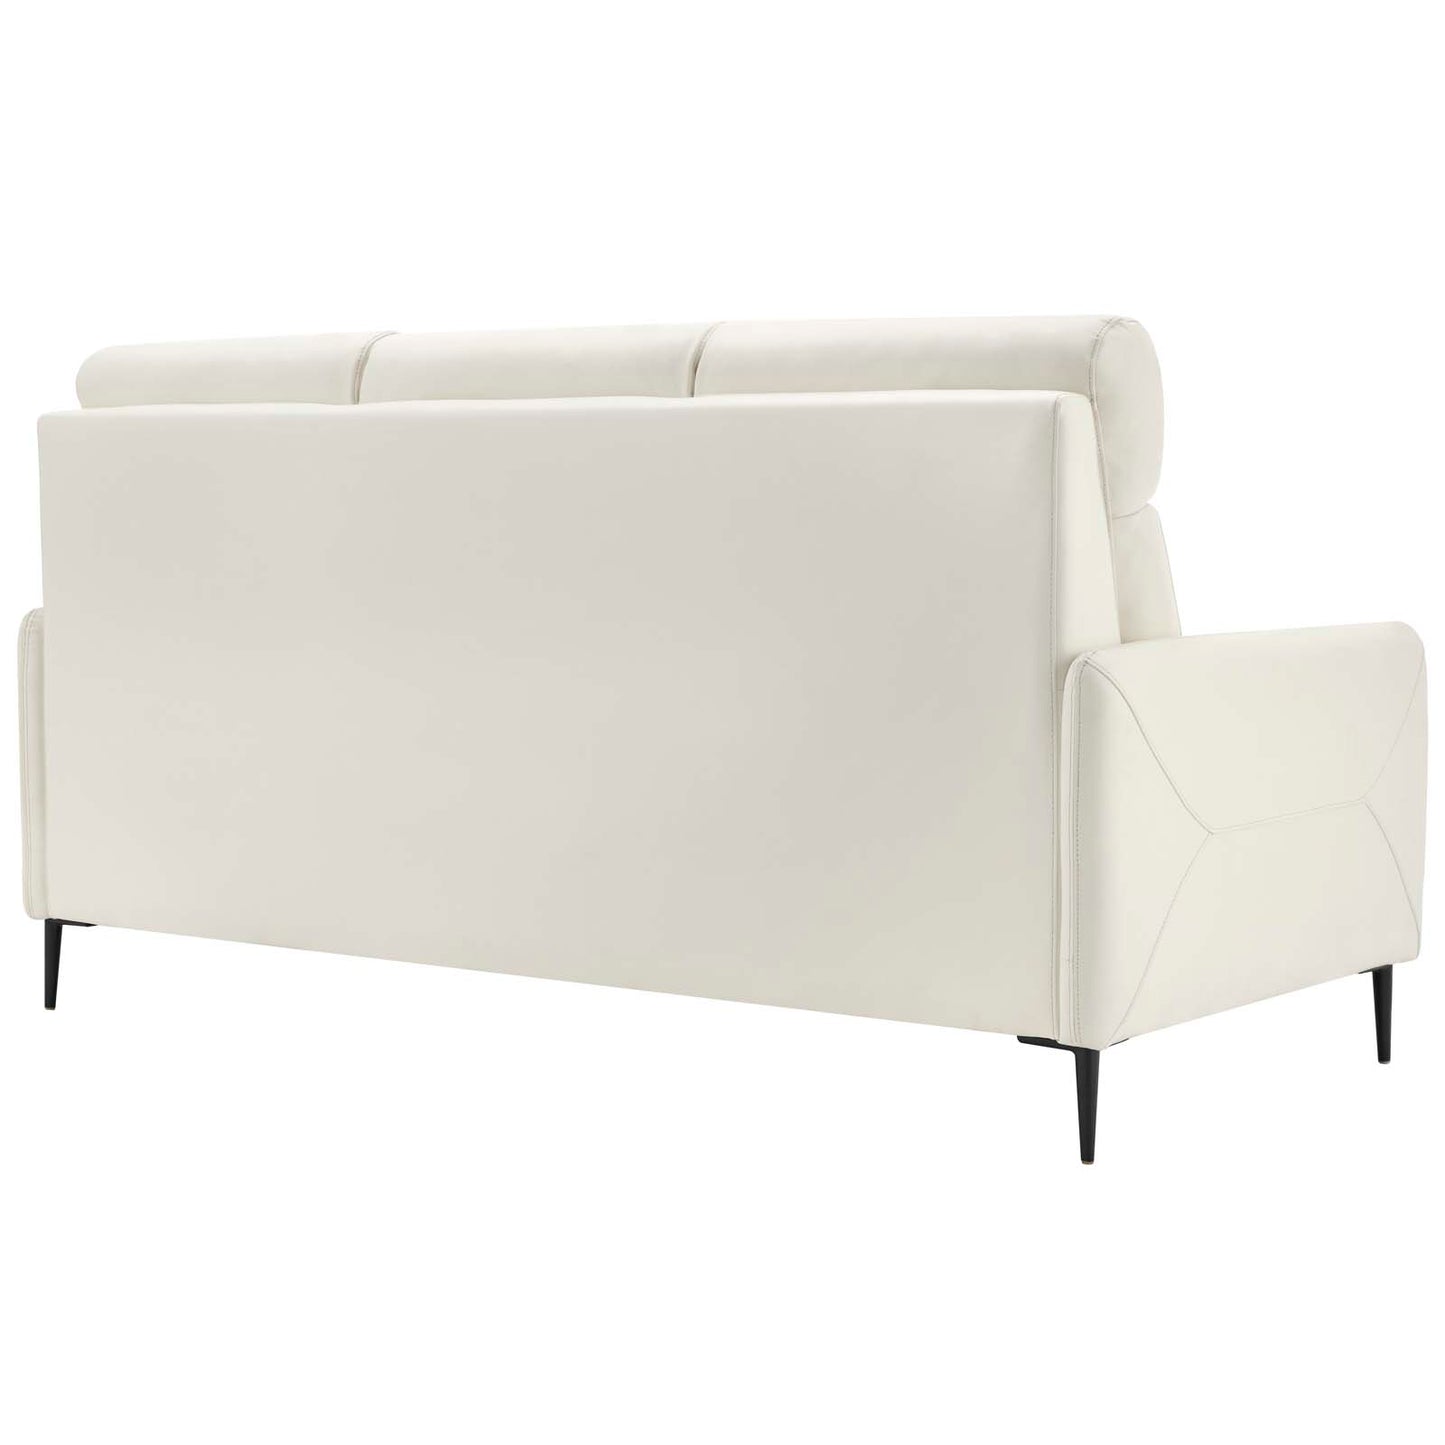 Huxley Leather Sofa White EEI-4561-WHI